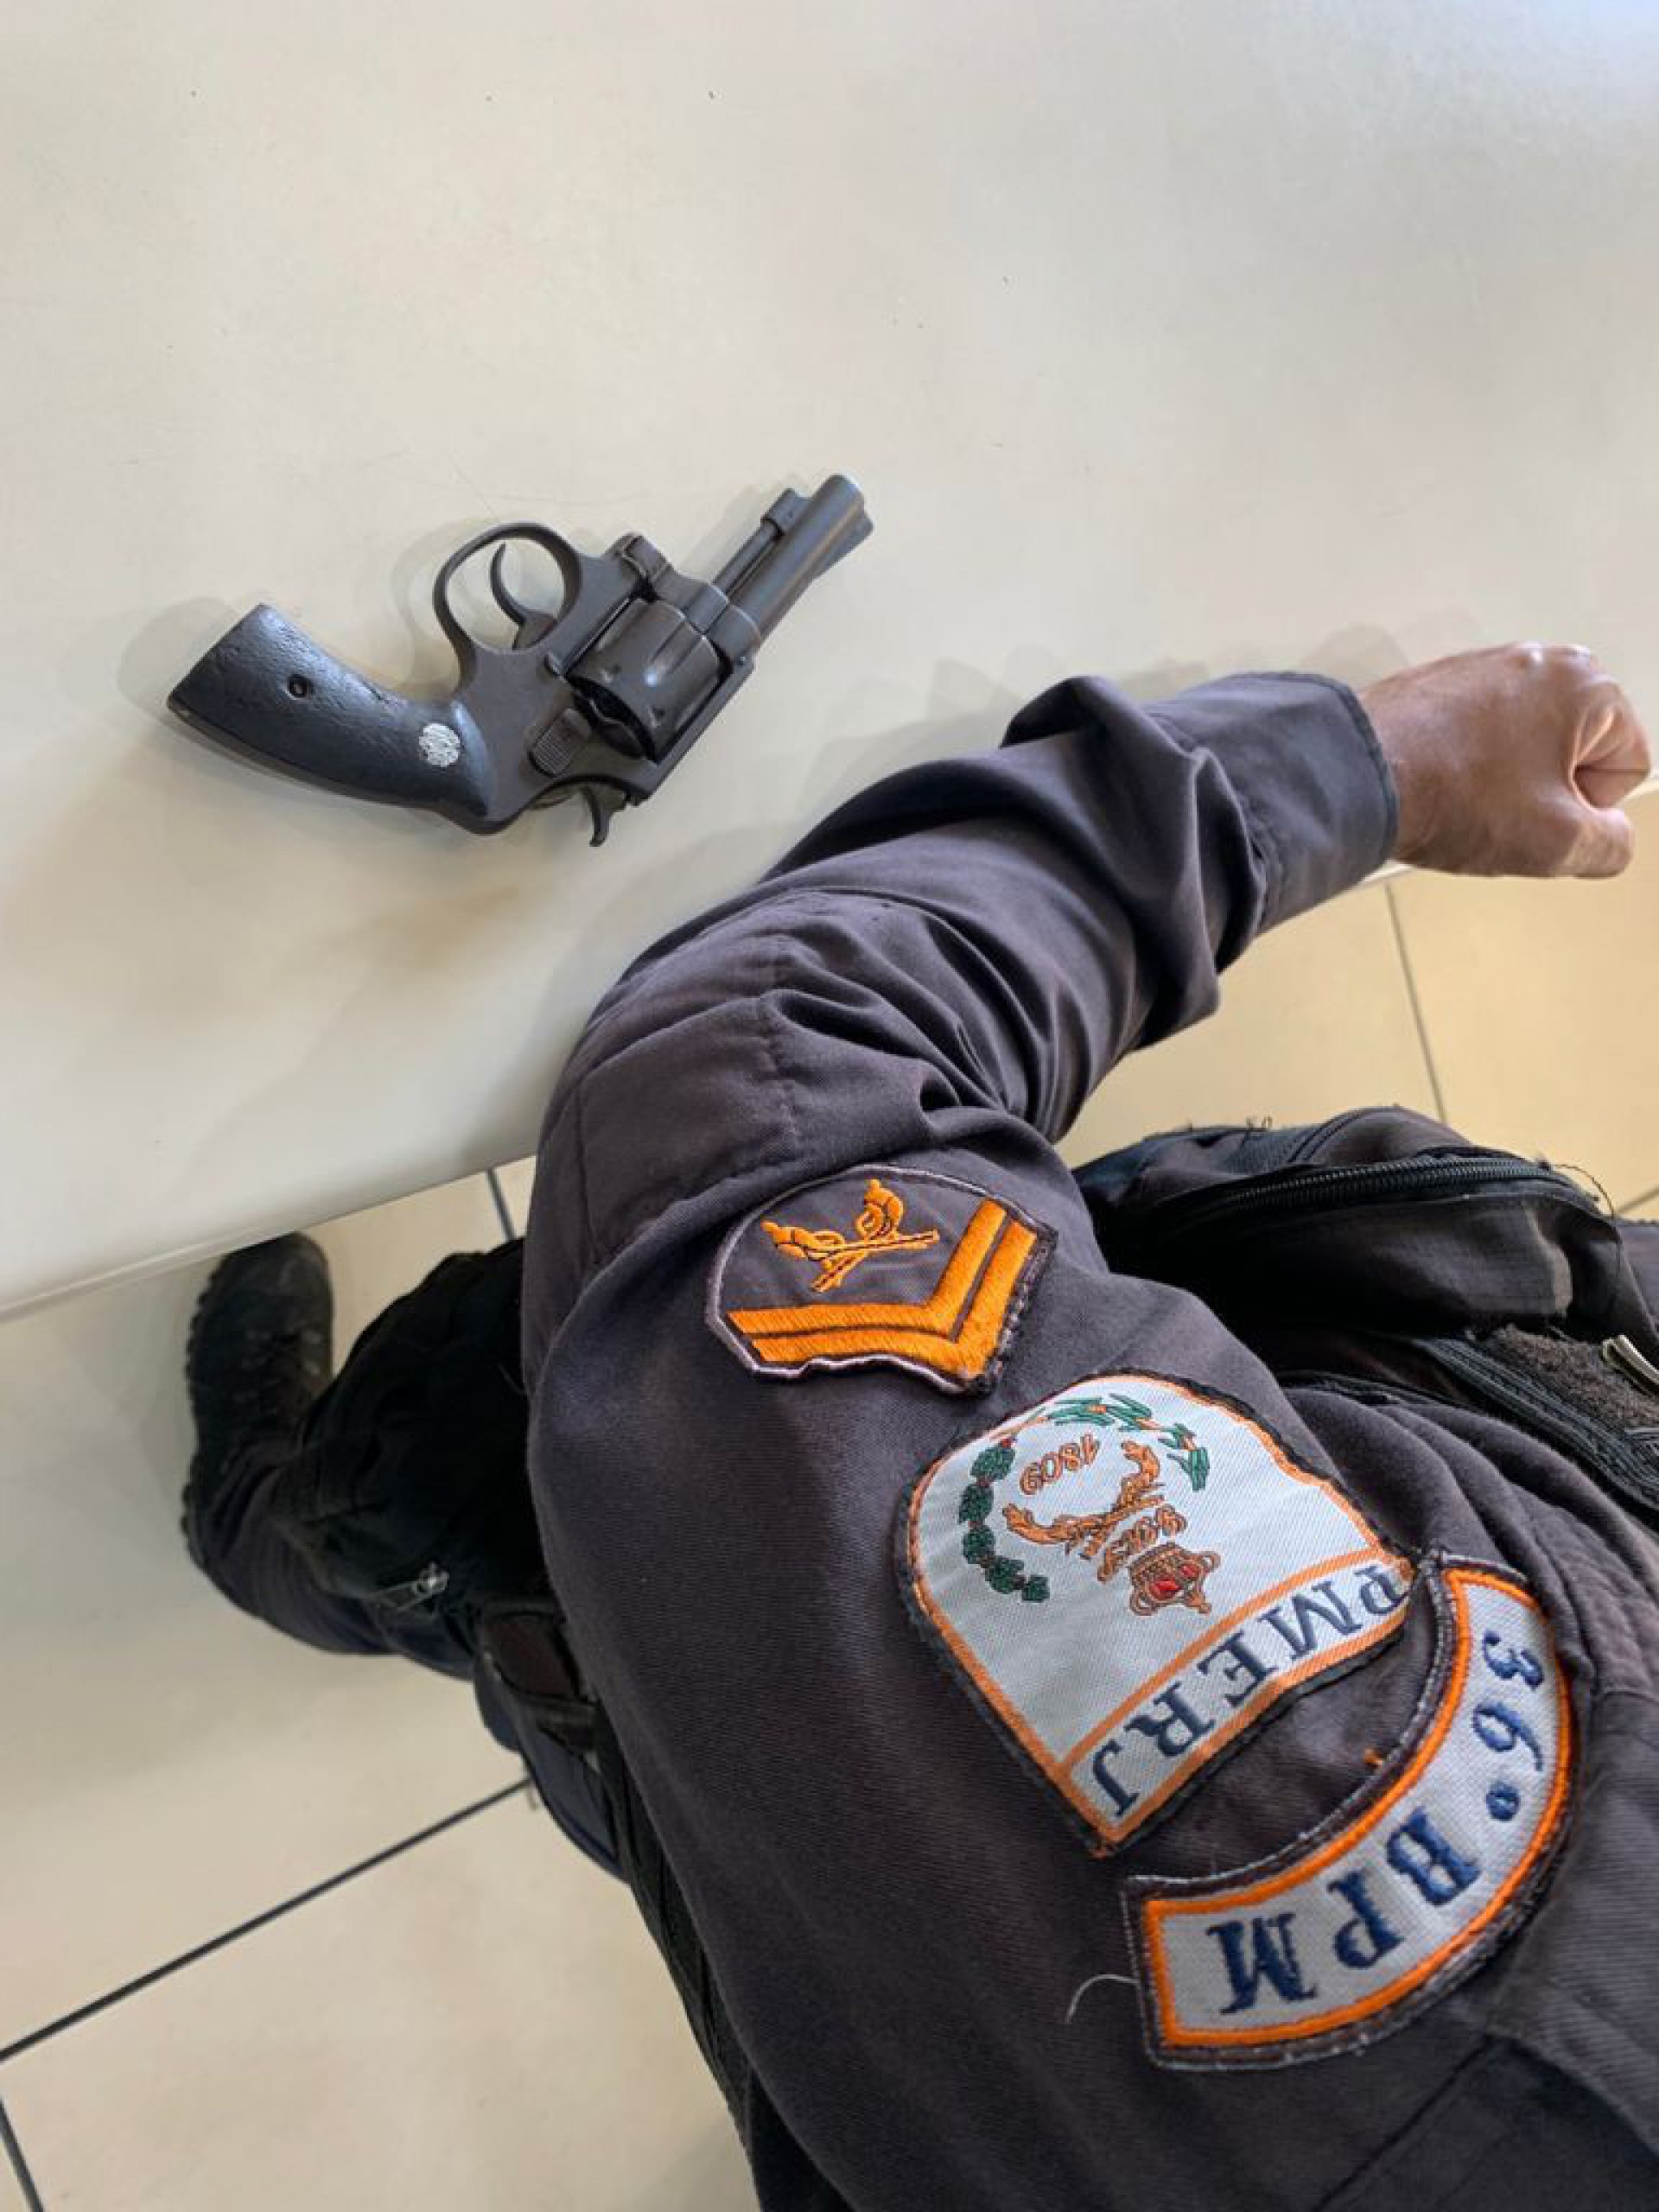 Miracema: 36° BPM apreende arma de fogo durante cumprimento de mandado judicial em residência